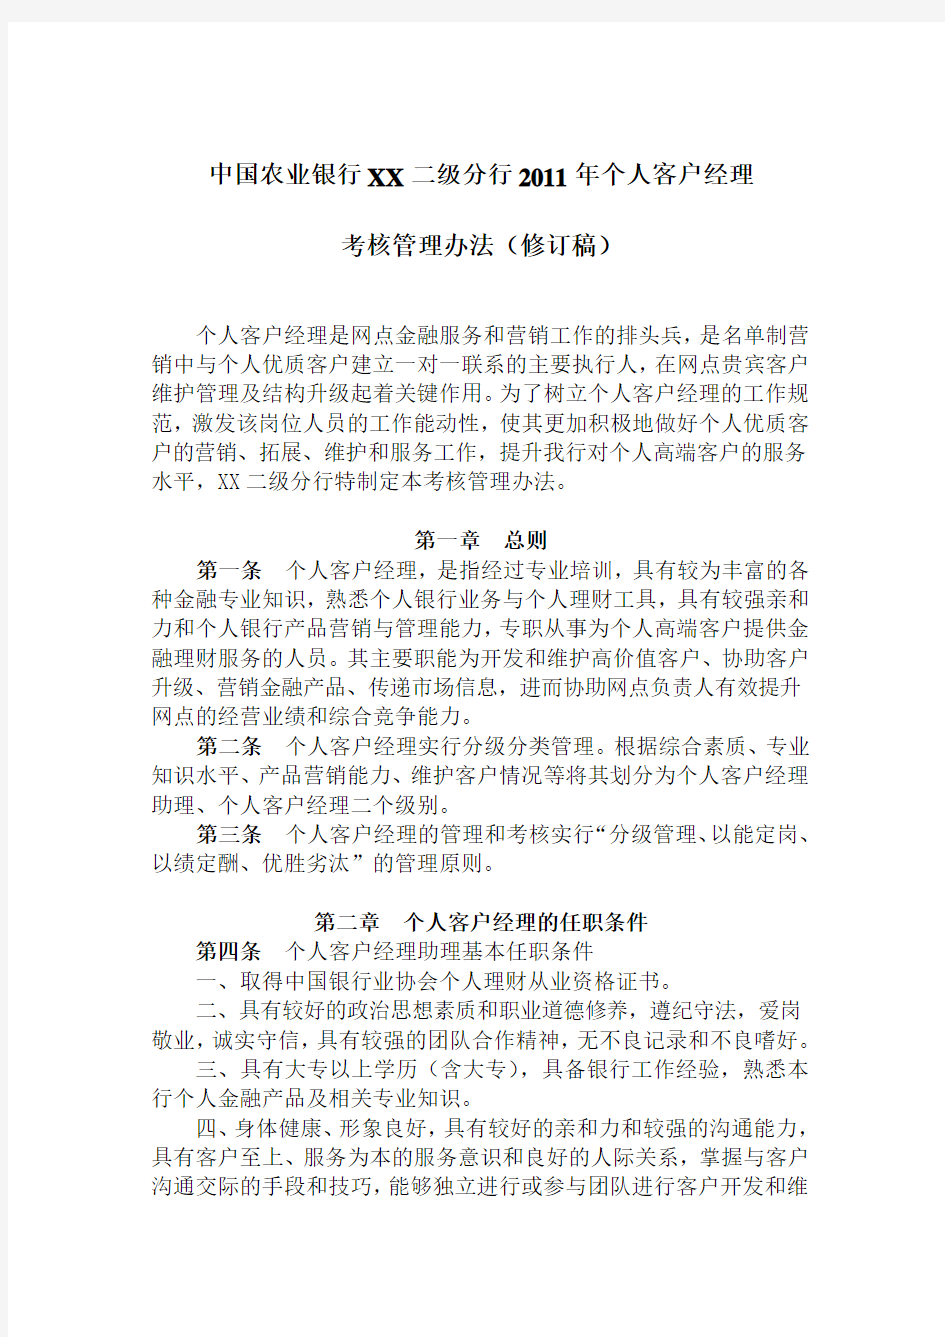 中国农业银行 二级分行 个人客户经理考核管理办法